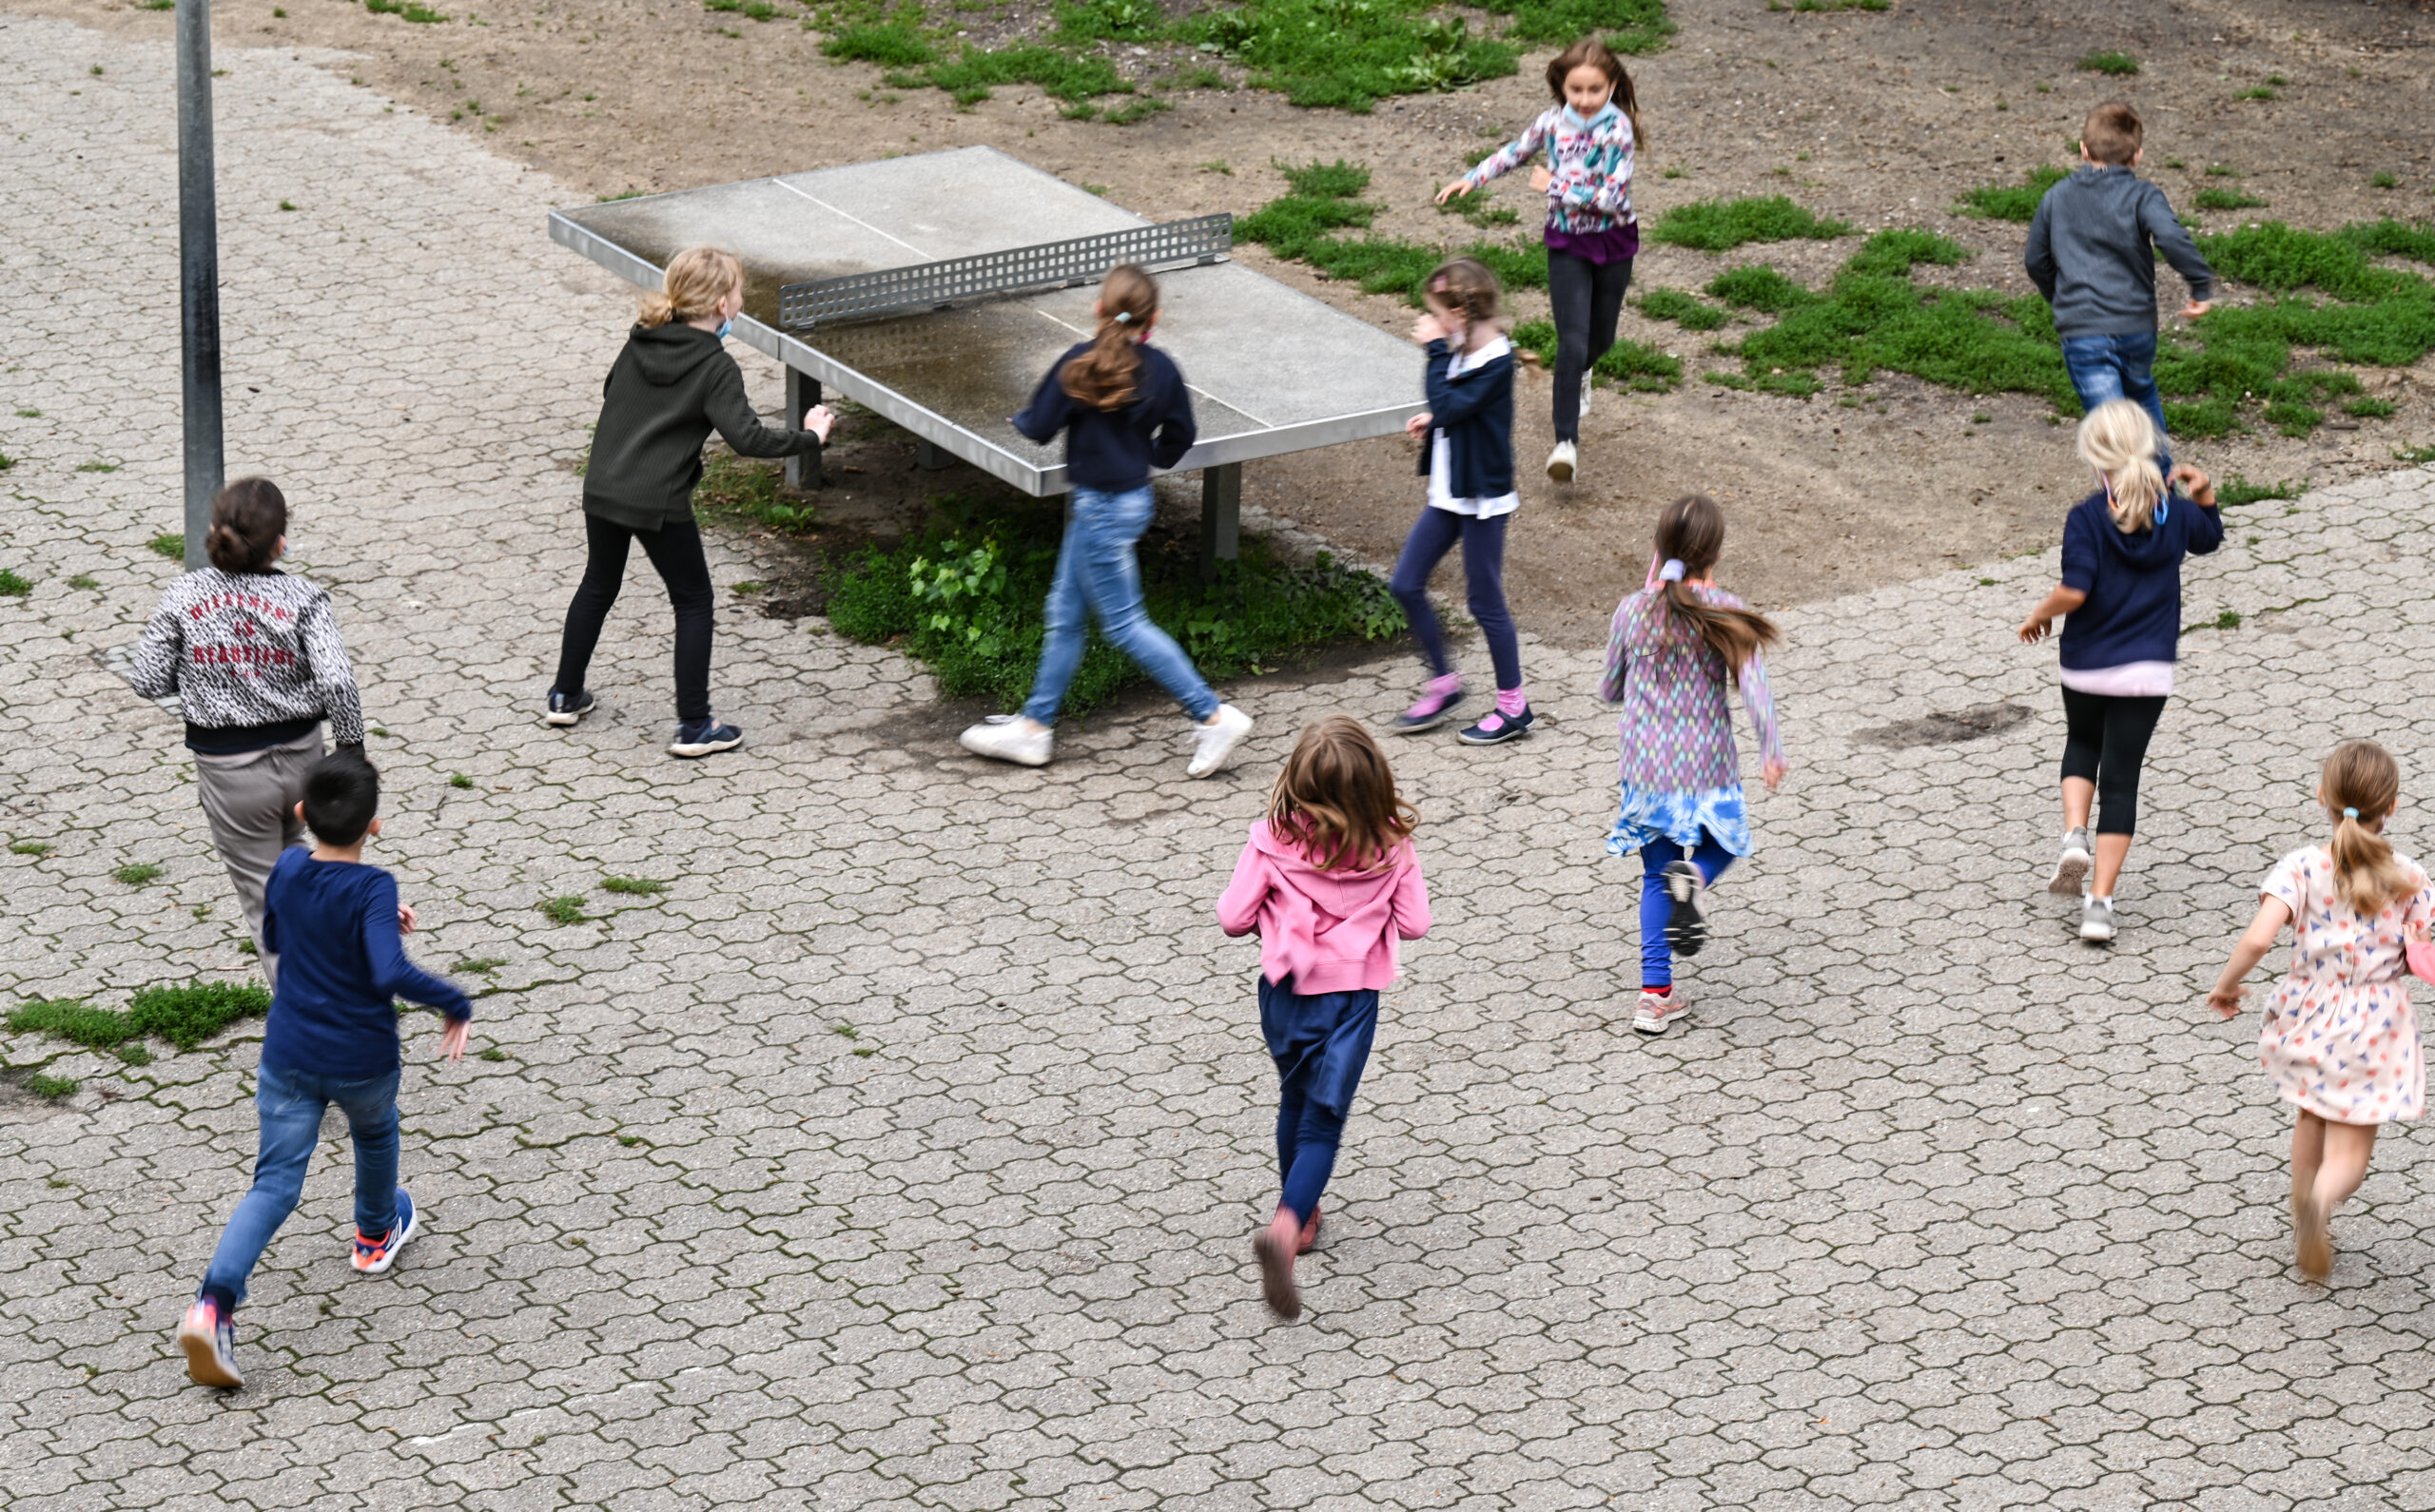 Schüler spielen auf einem Schulhof (Symbolfoto).